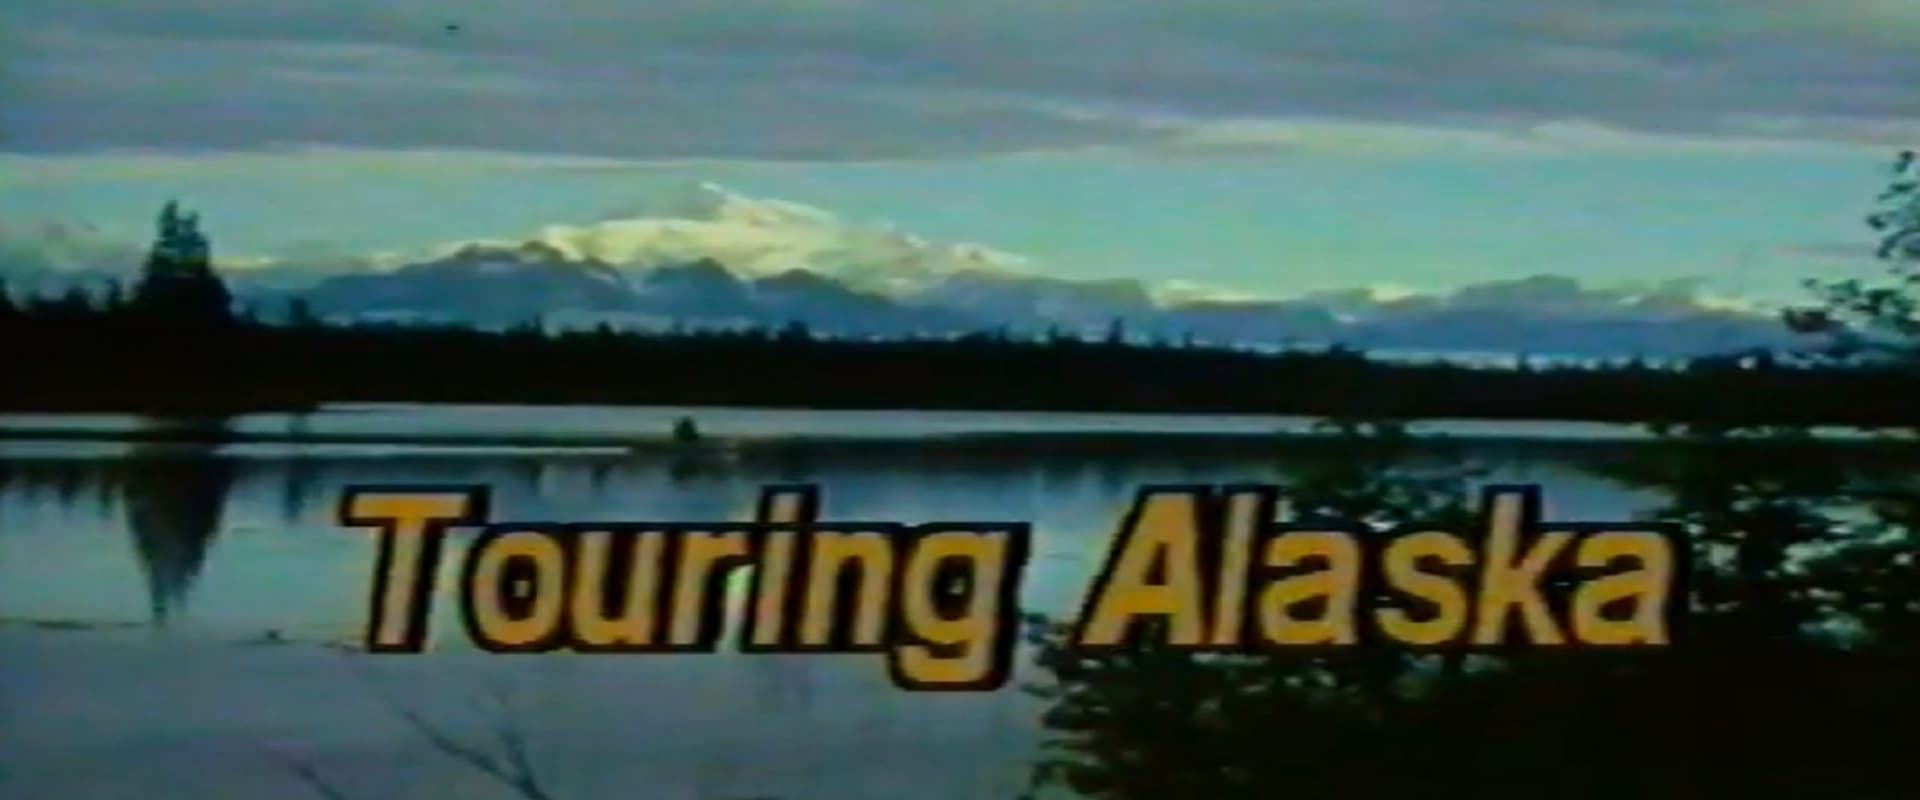 Touring Alaska